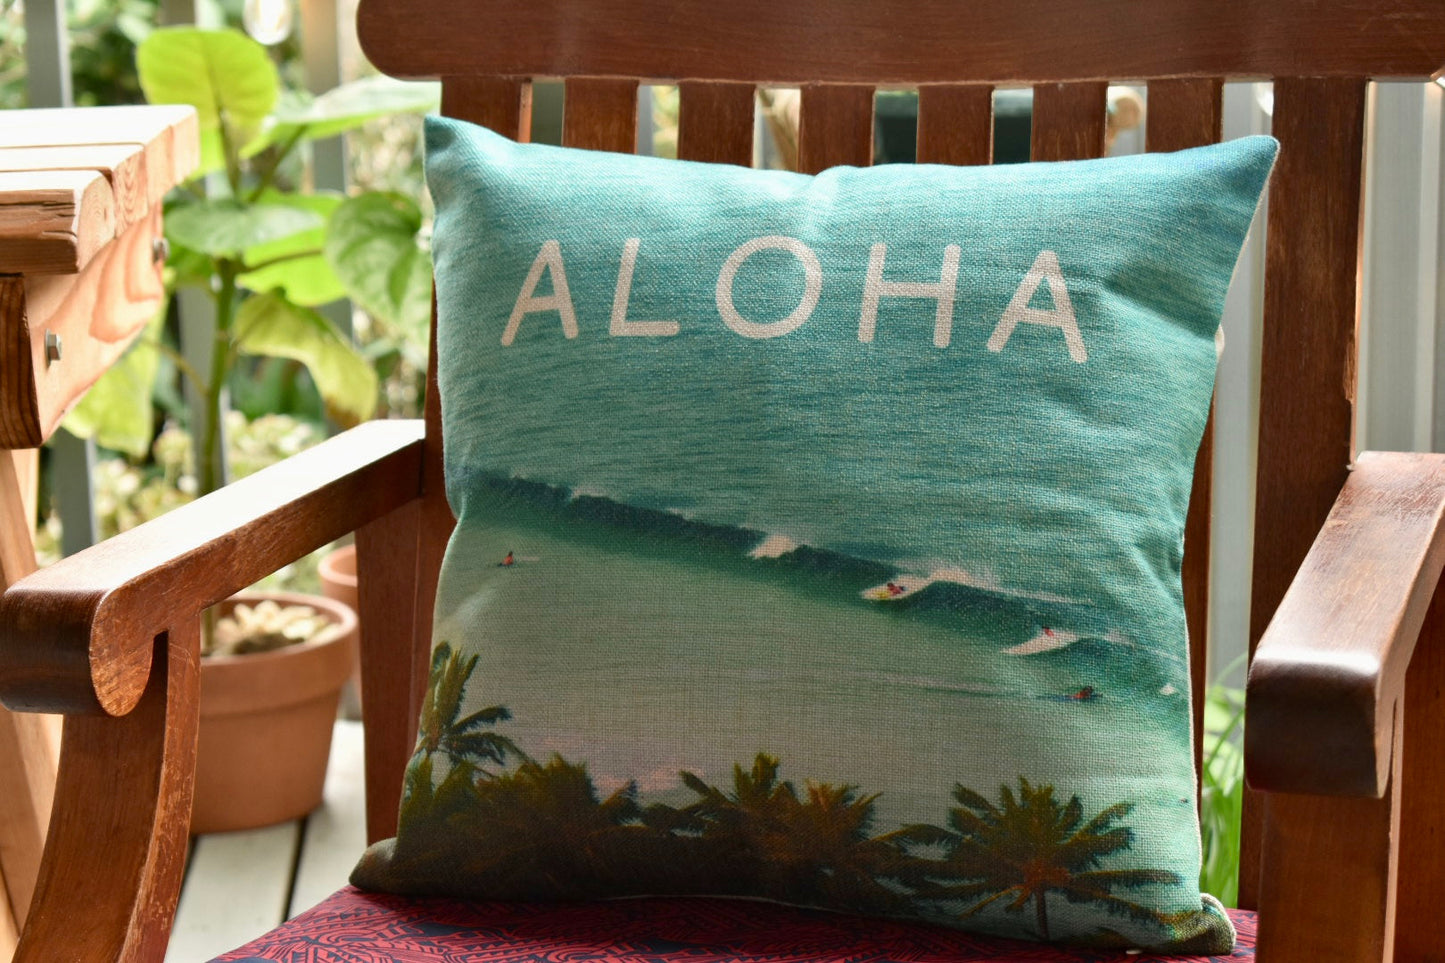 Sending You Aloha aloha at home Aloha Surf's Up Pillowcase